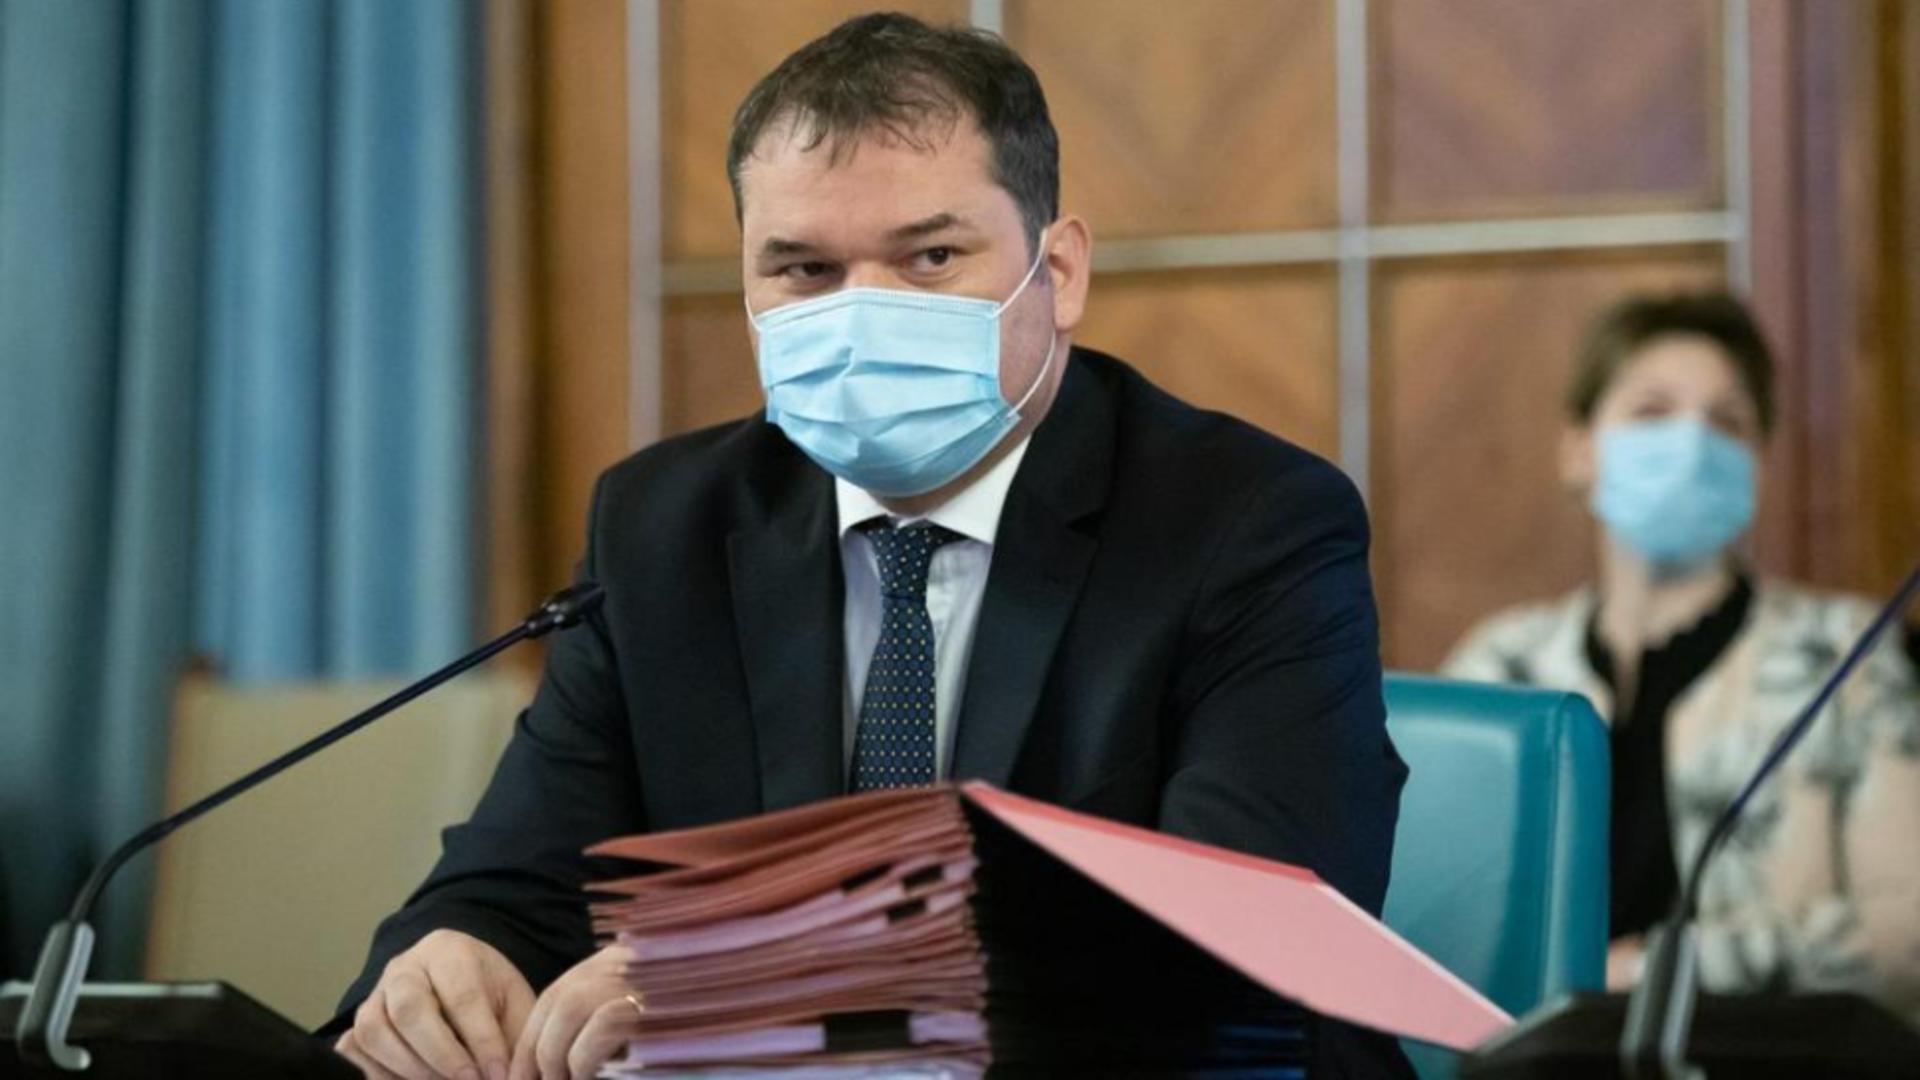 Cseke Attila, ministrul interimar al Sănătății/ Facebook